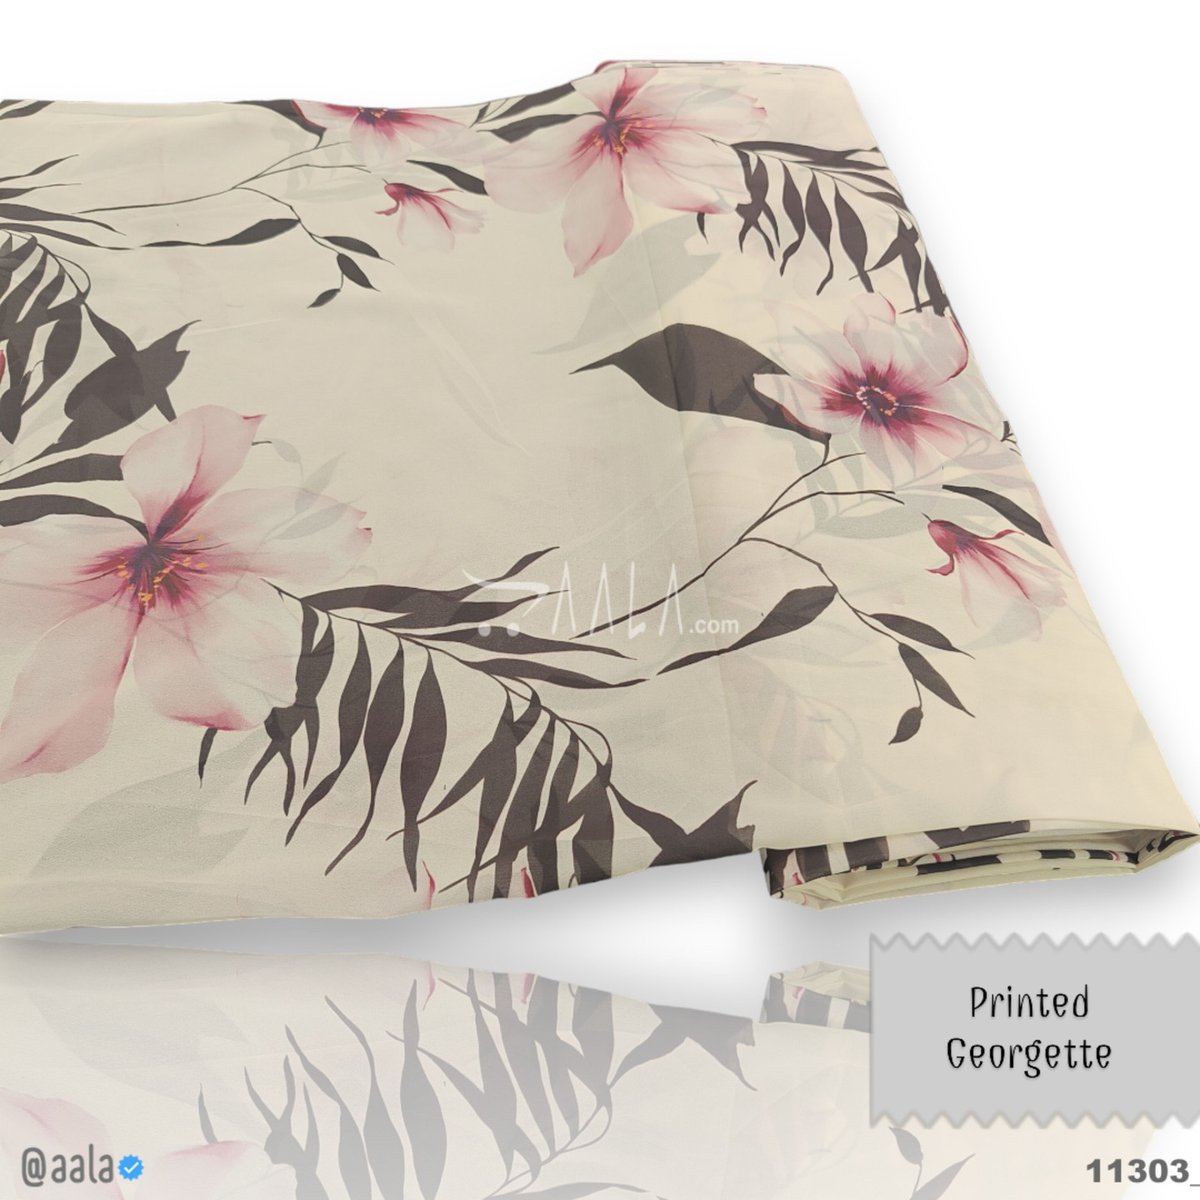 Printed Georgette Fabrics at aala.com #aala #onlinefabrics #fashionfabrics #fashiondesigners #printed #georgette #prints #floral #bride Buy Online at aala.com/p/11303